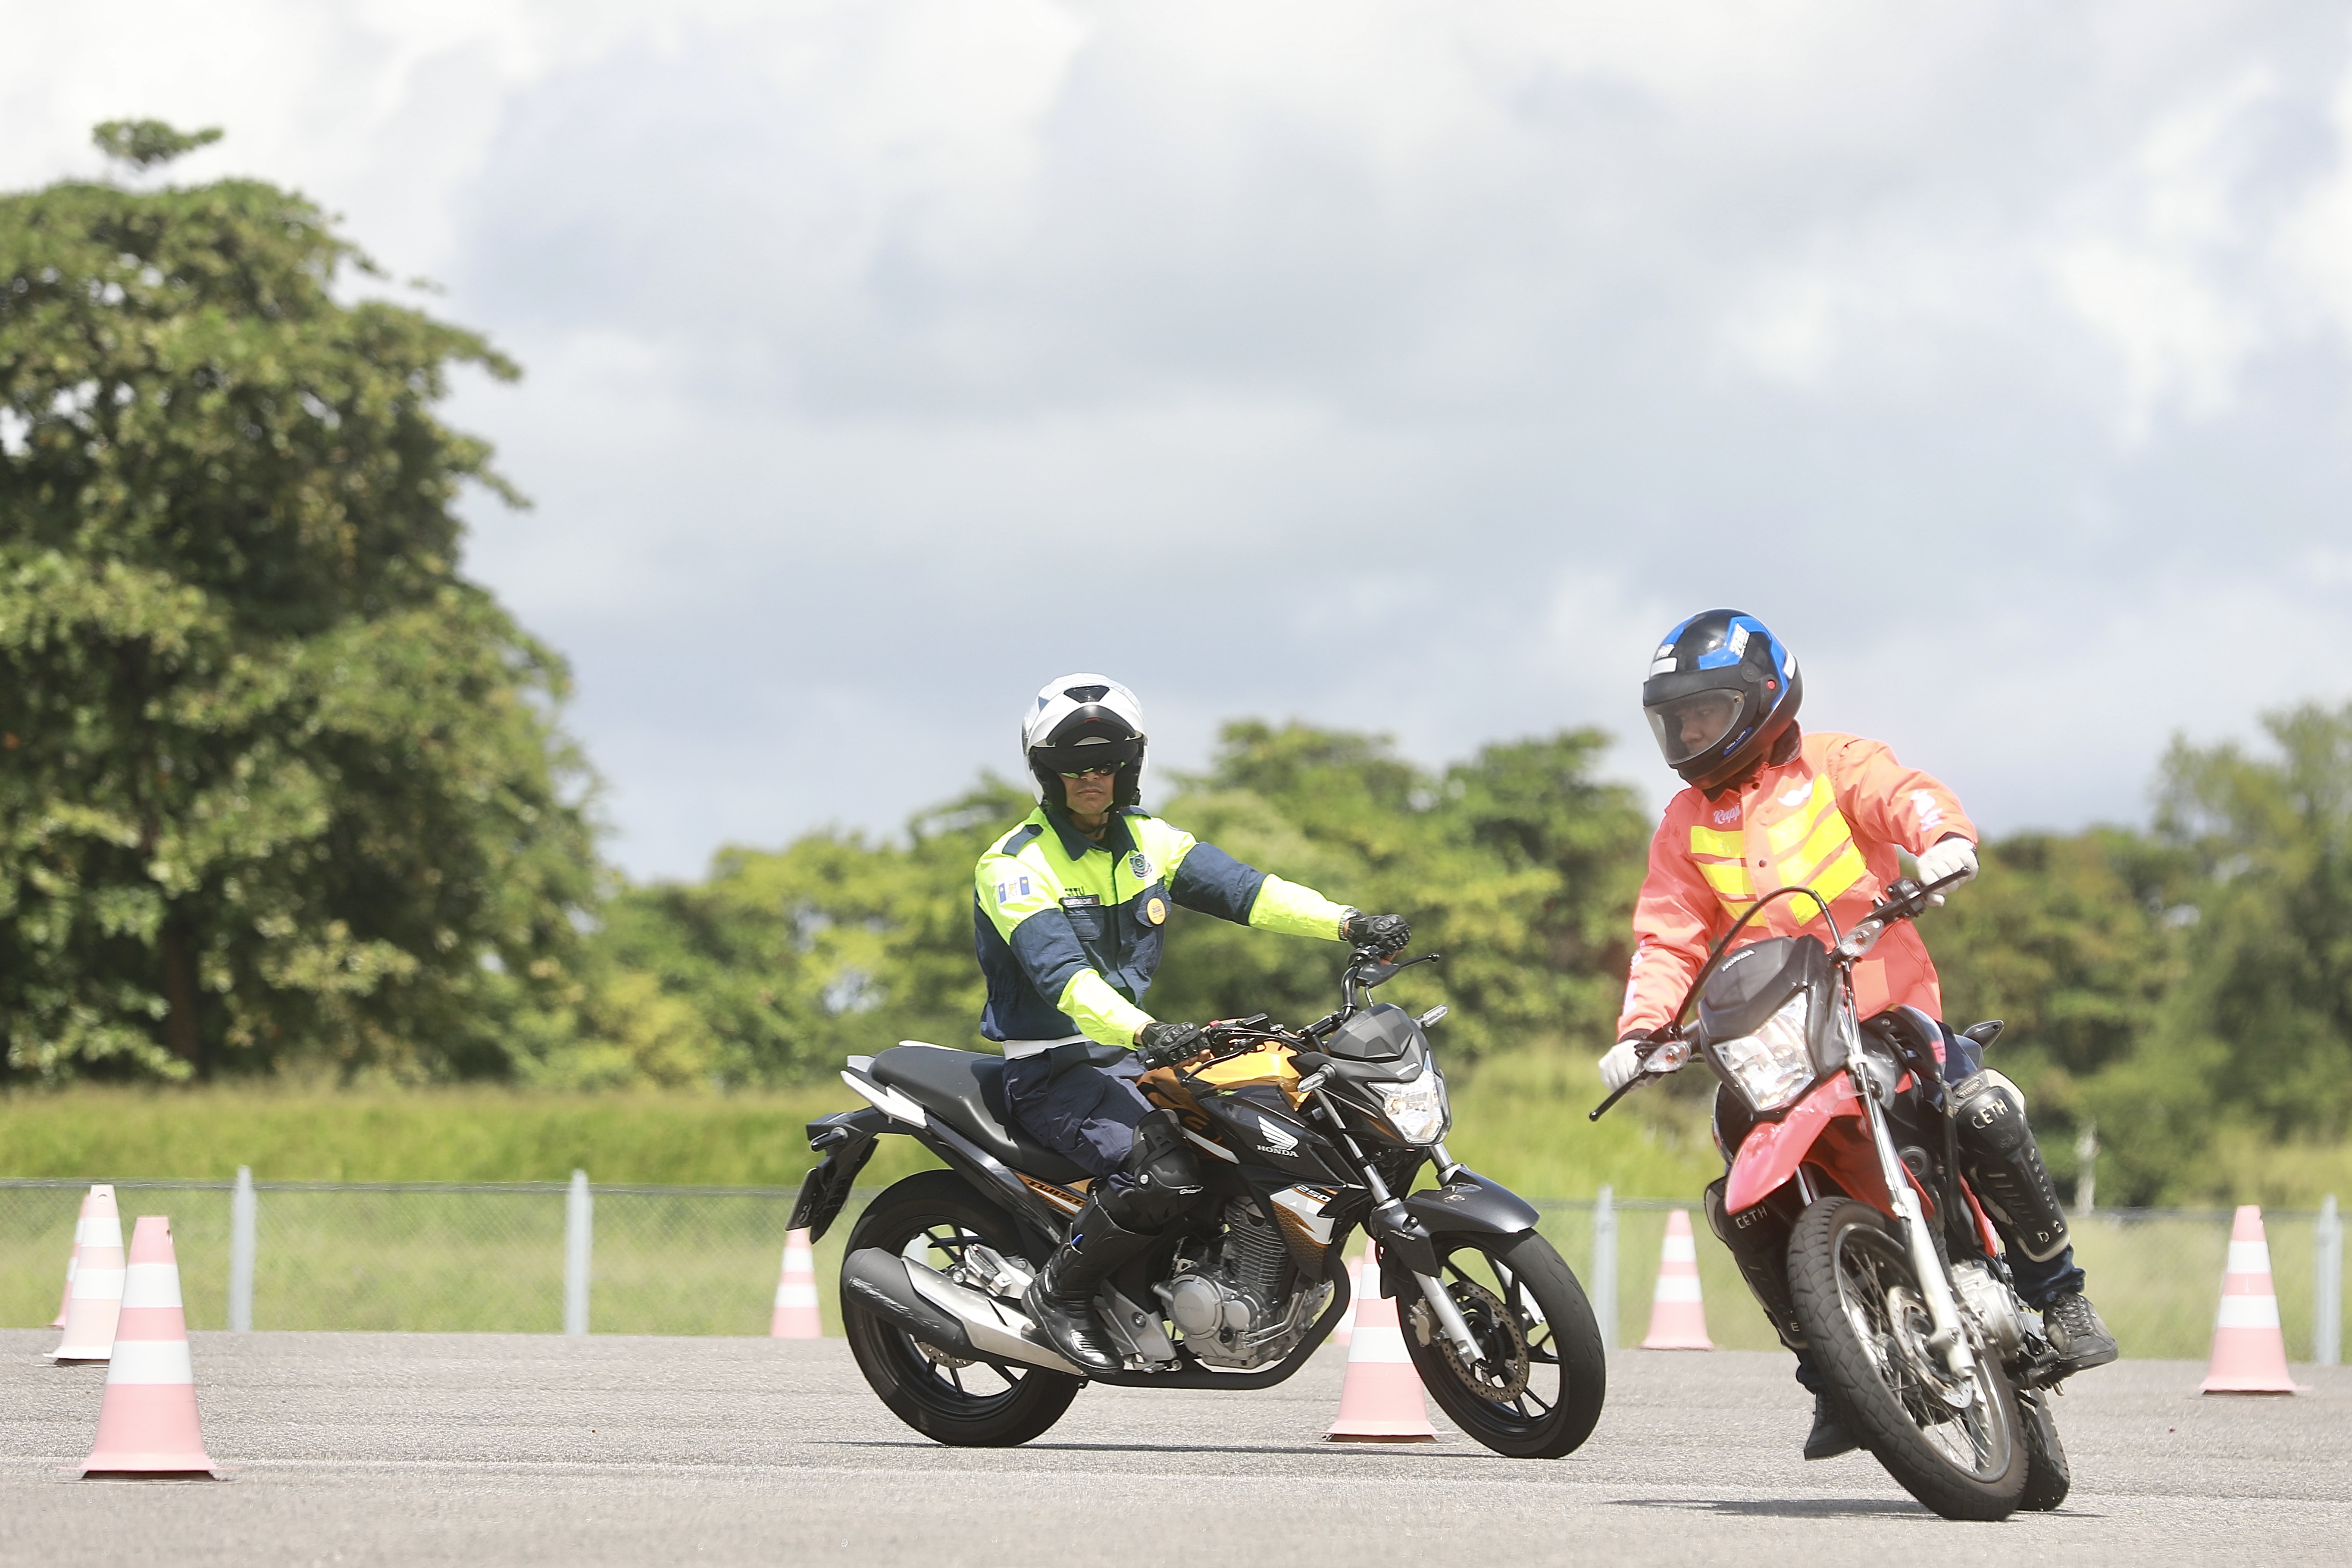 CTTU conscientiza motociclistas de aplicativo sobre boas práticas para maior segurança viária